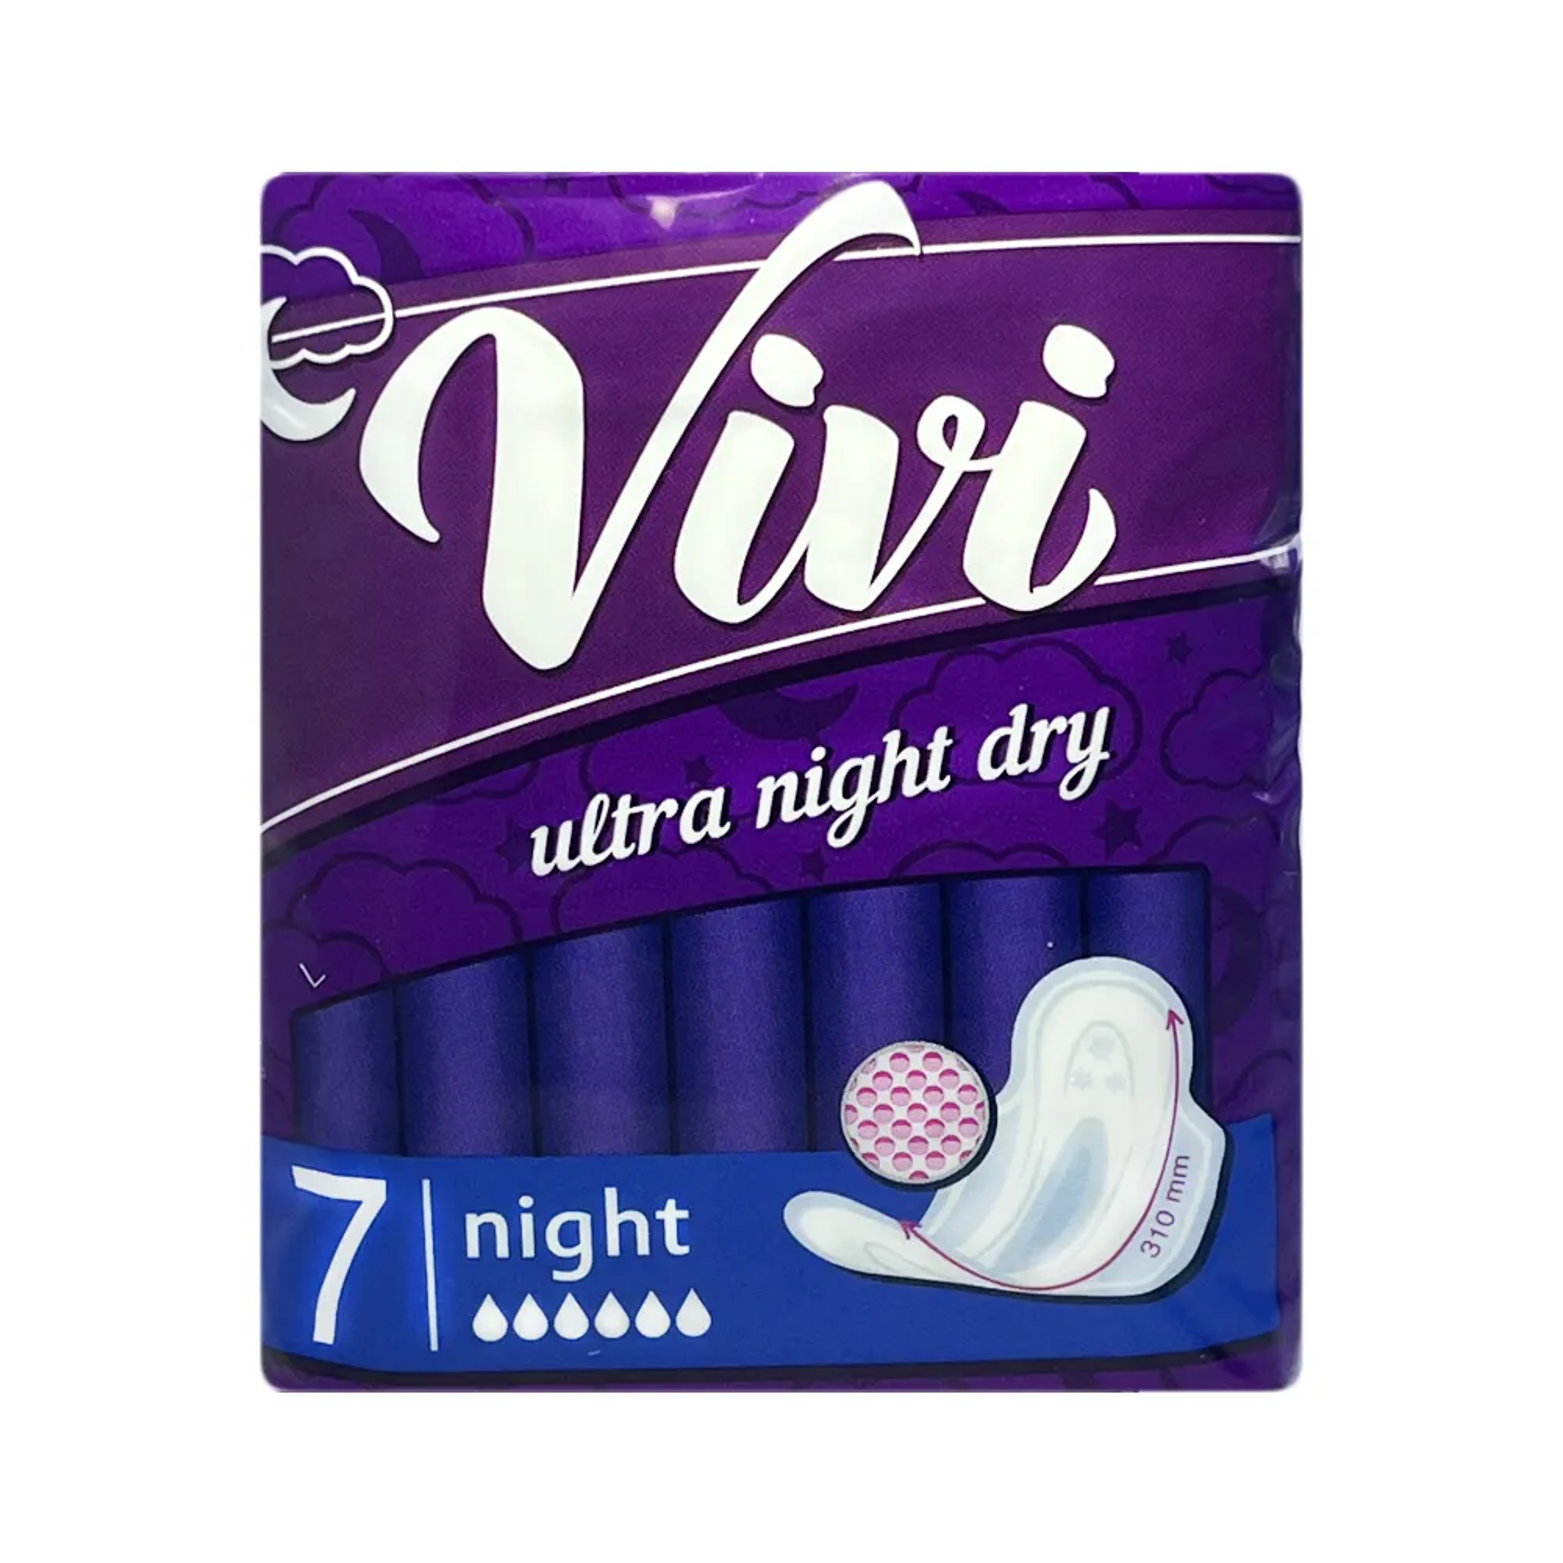 Прокладки женские гигиенические Vivi Ultra Night Dry ночные 7 шт прокладки женские naturella classic camomile night single ночные 6 шт с крылышками